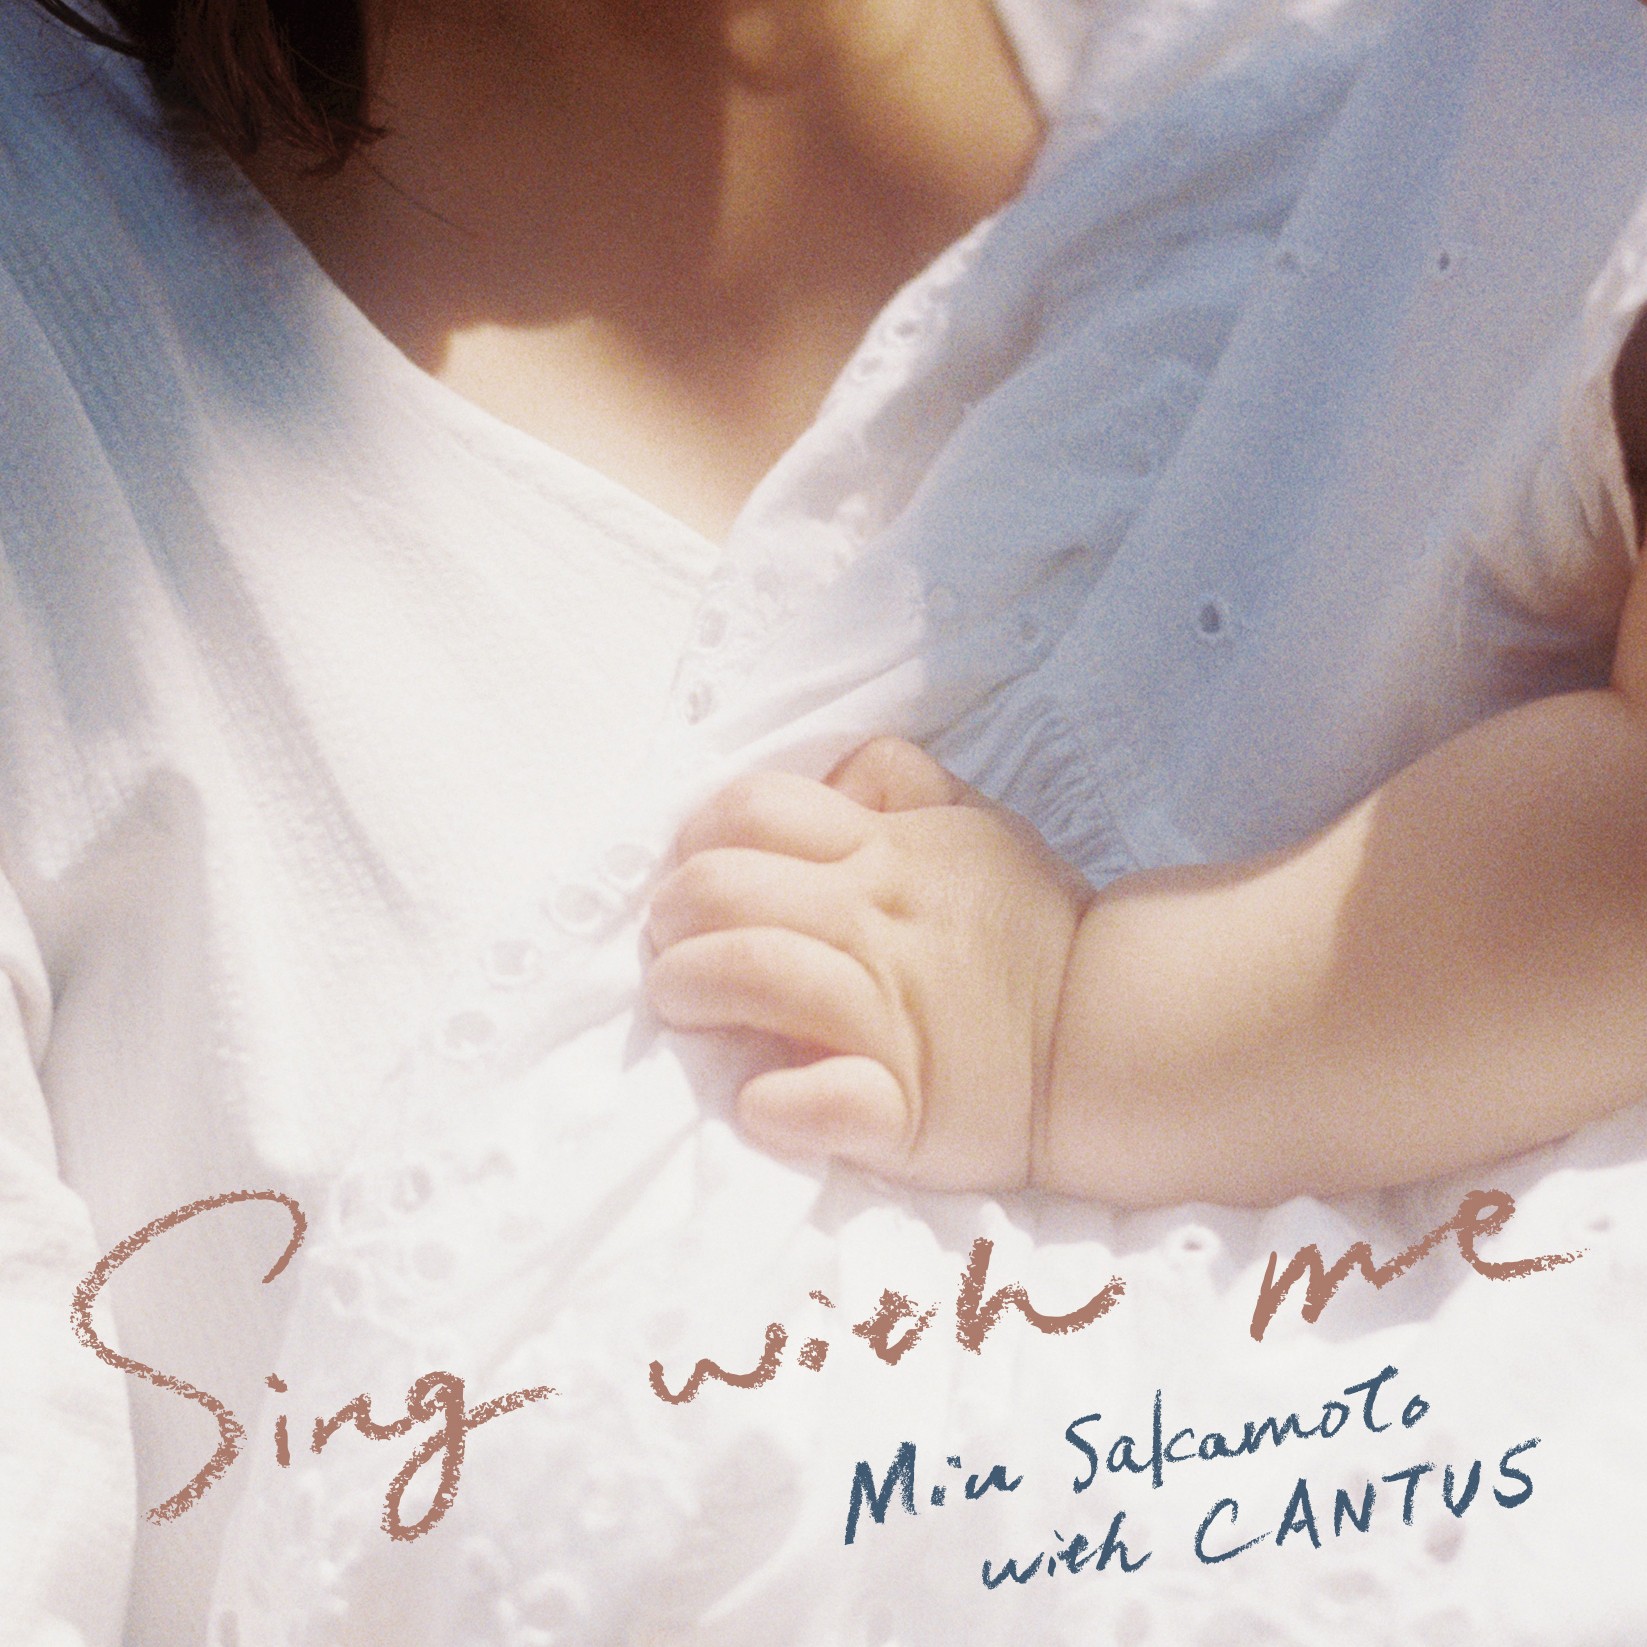 坂本美雨 (Miu Sakamoto) with CANTUS – Sing with me [FLAC / 24bit Lossless / WEB] [2016.06.22]